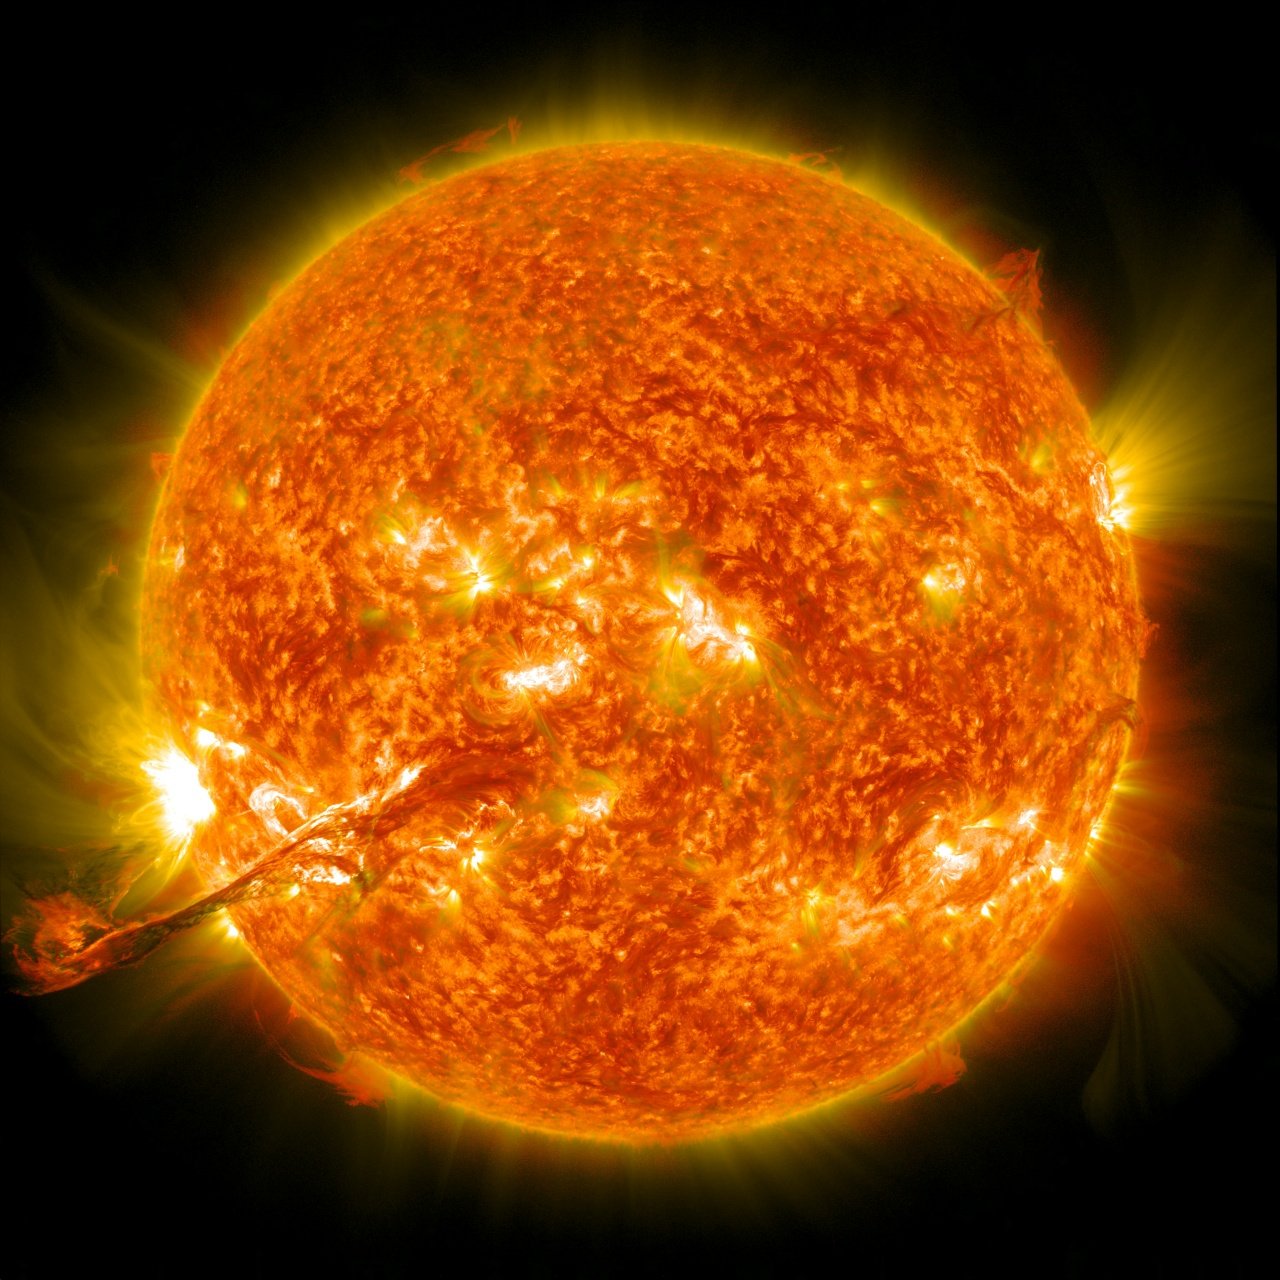 Ondas magnéticas podrían ser la causa de las altas temperaturas de la corona solar